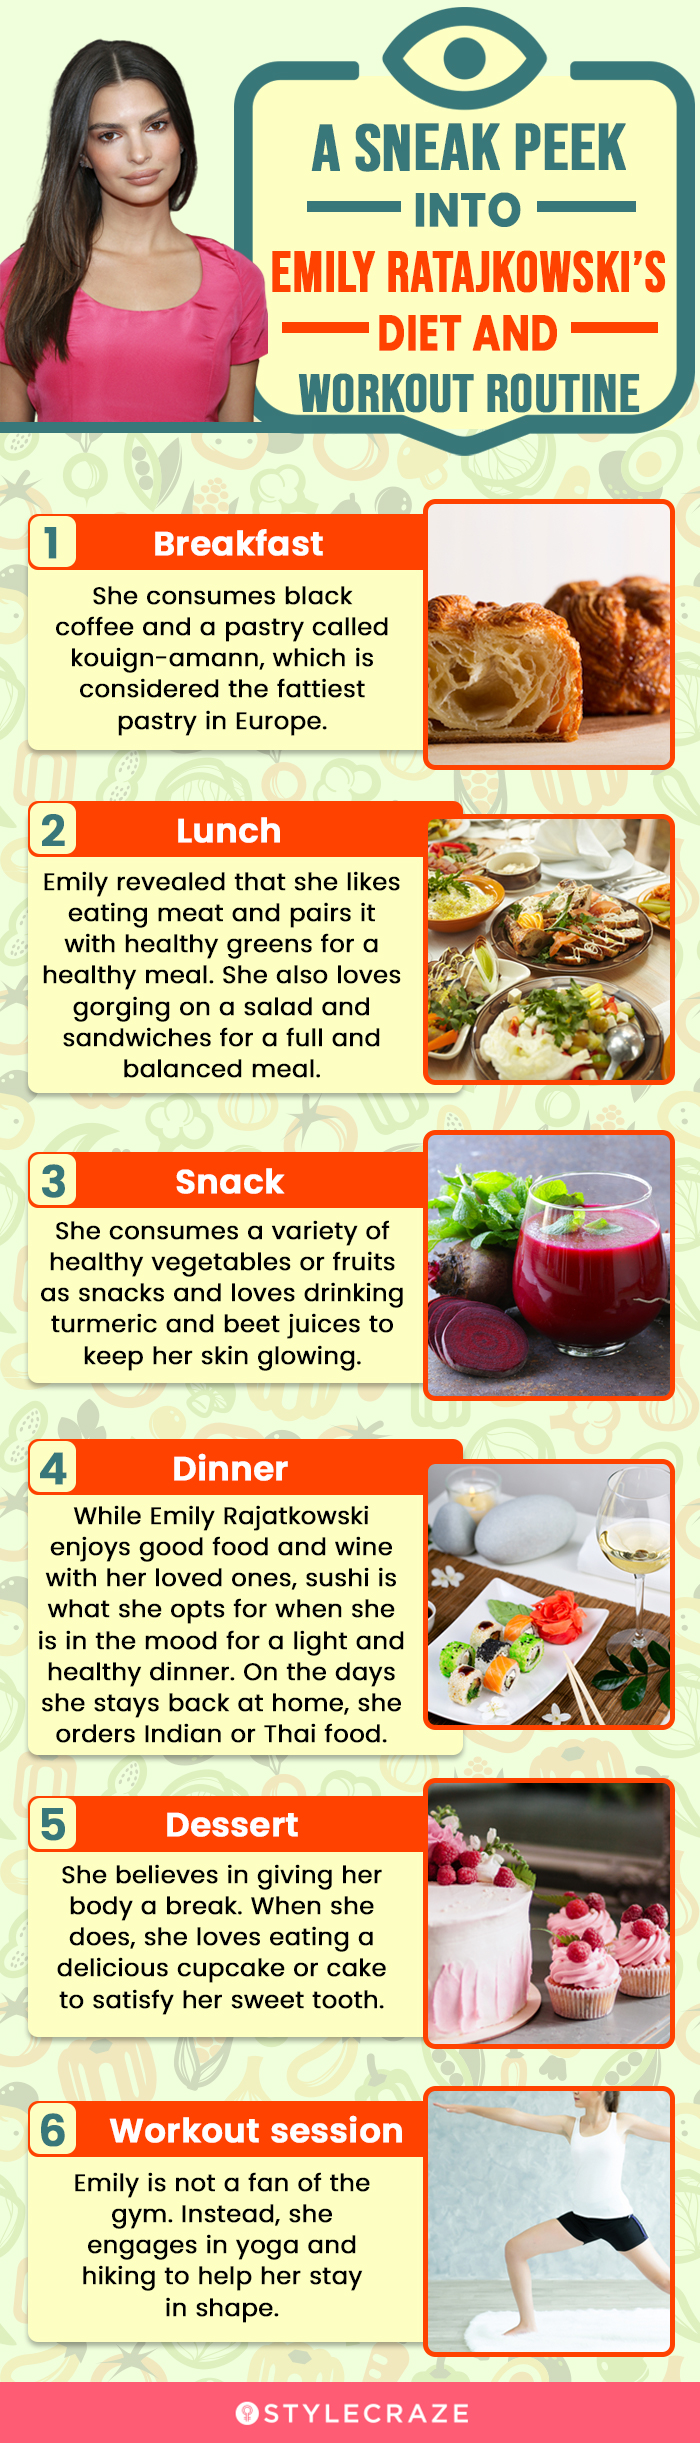 a sneak peek into emily ratajkowski’s diet and workout routine (infographic)